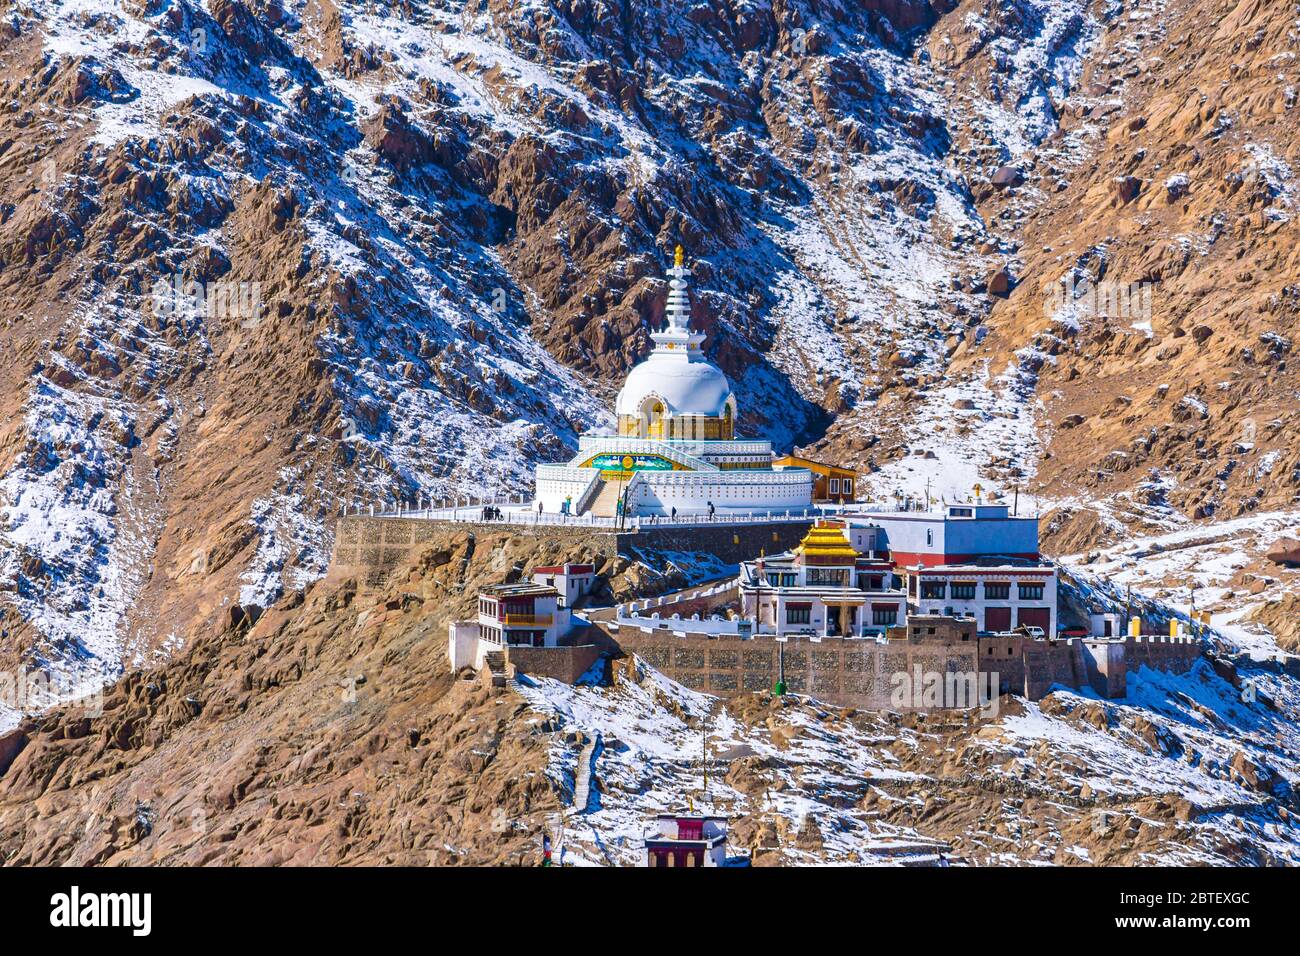 Die Stupa ist eine der alten und ältesten Stupas in Leh Stadt, Ladakh, Jammu & Kaschmir, Indien, Asien. Shanti Stupa ist ein ruhiger und friedlicher Ort. Stockfoto